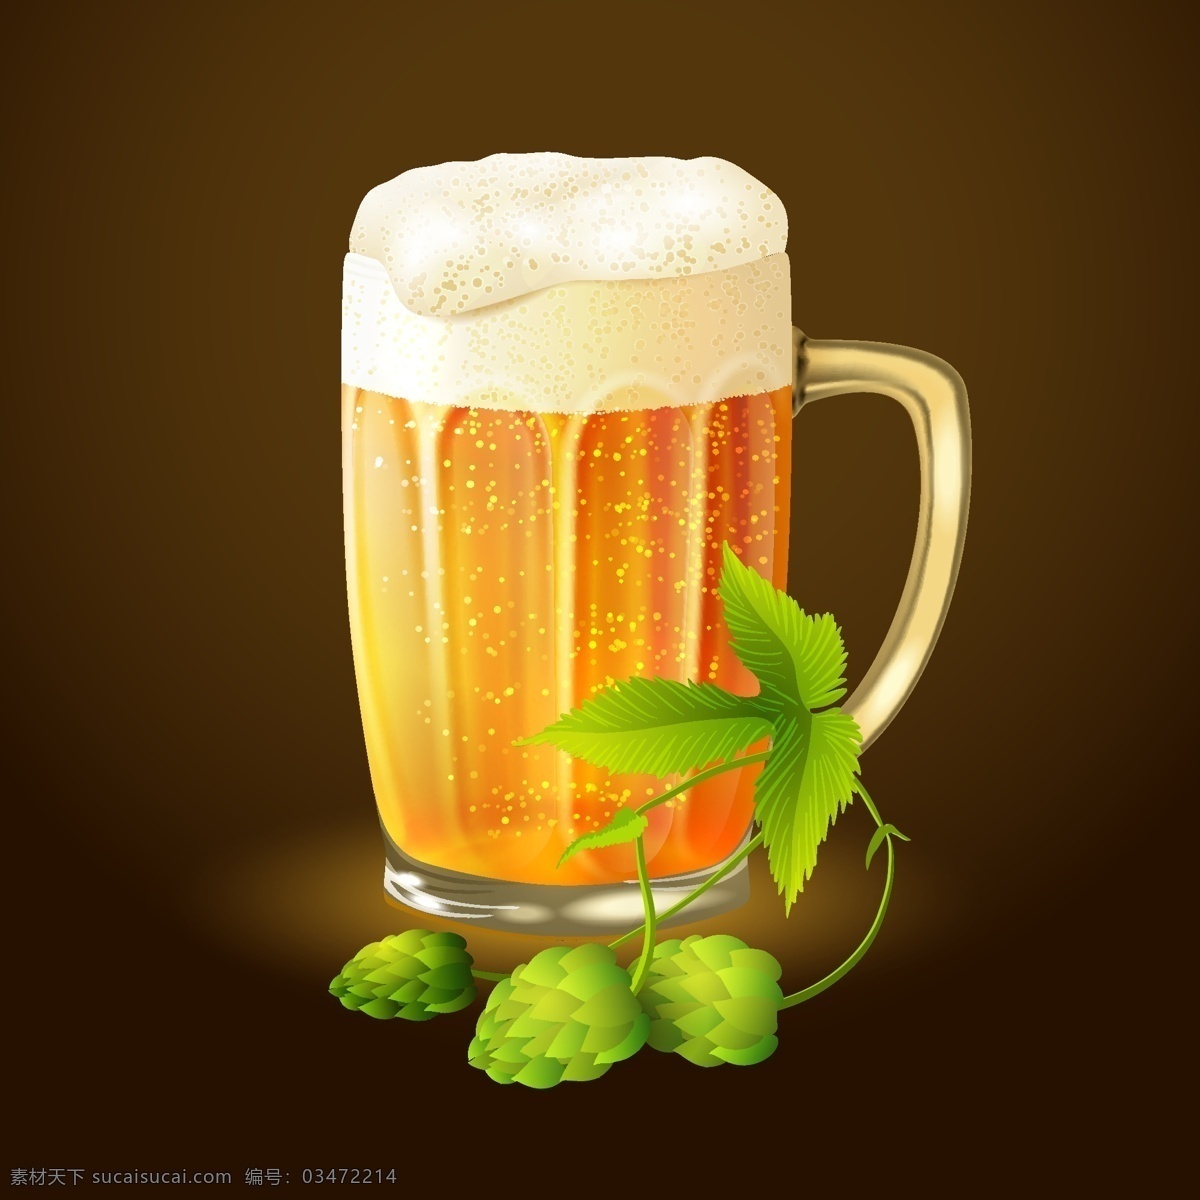 啤酒beer 啤酒 啤酒商标 啤酒标签 啤酒标志 啤酒设计 酒水 beer 啤酒包装 小图标 小标志 图标 logo 标志 vi icon 标识 图标设计 logo设计 标志设计 标识设计 矢量设计 餐饮美食 生活百科 矢量